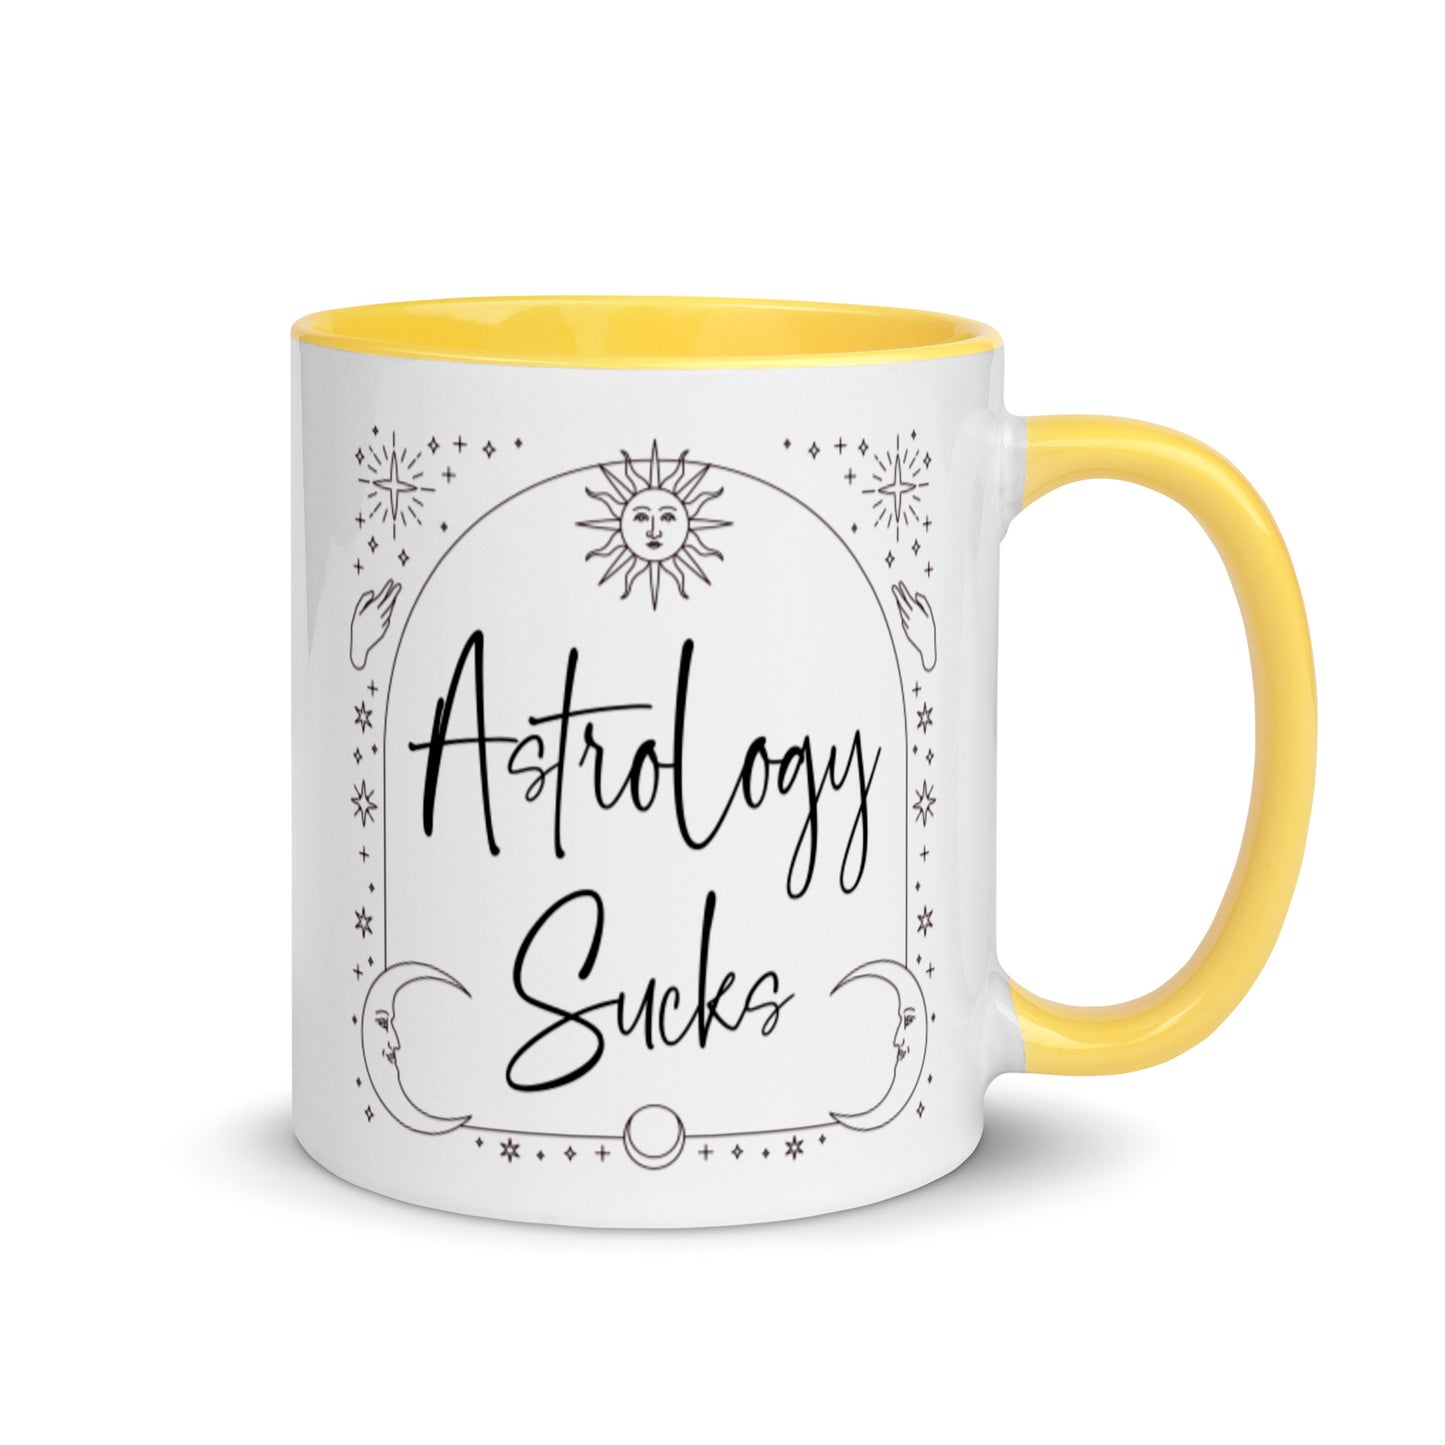 "Astrology Sucks" Mug (Ceramic w/Color Inside)